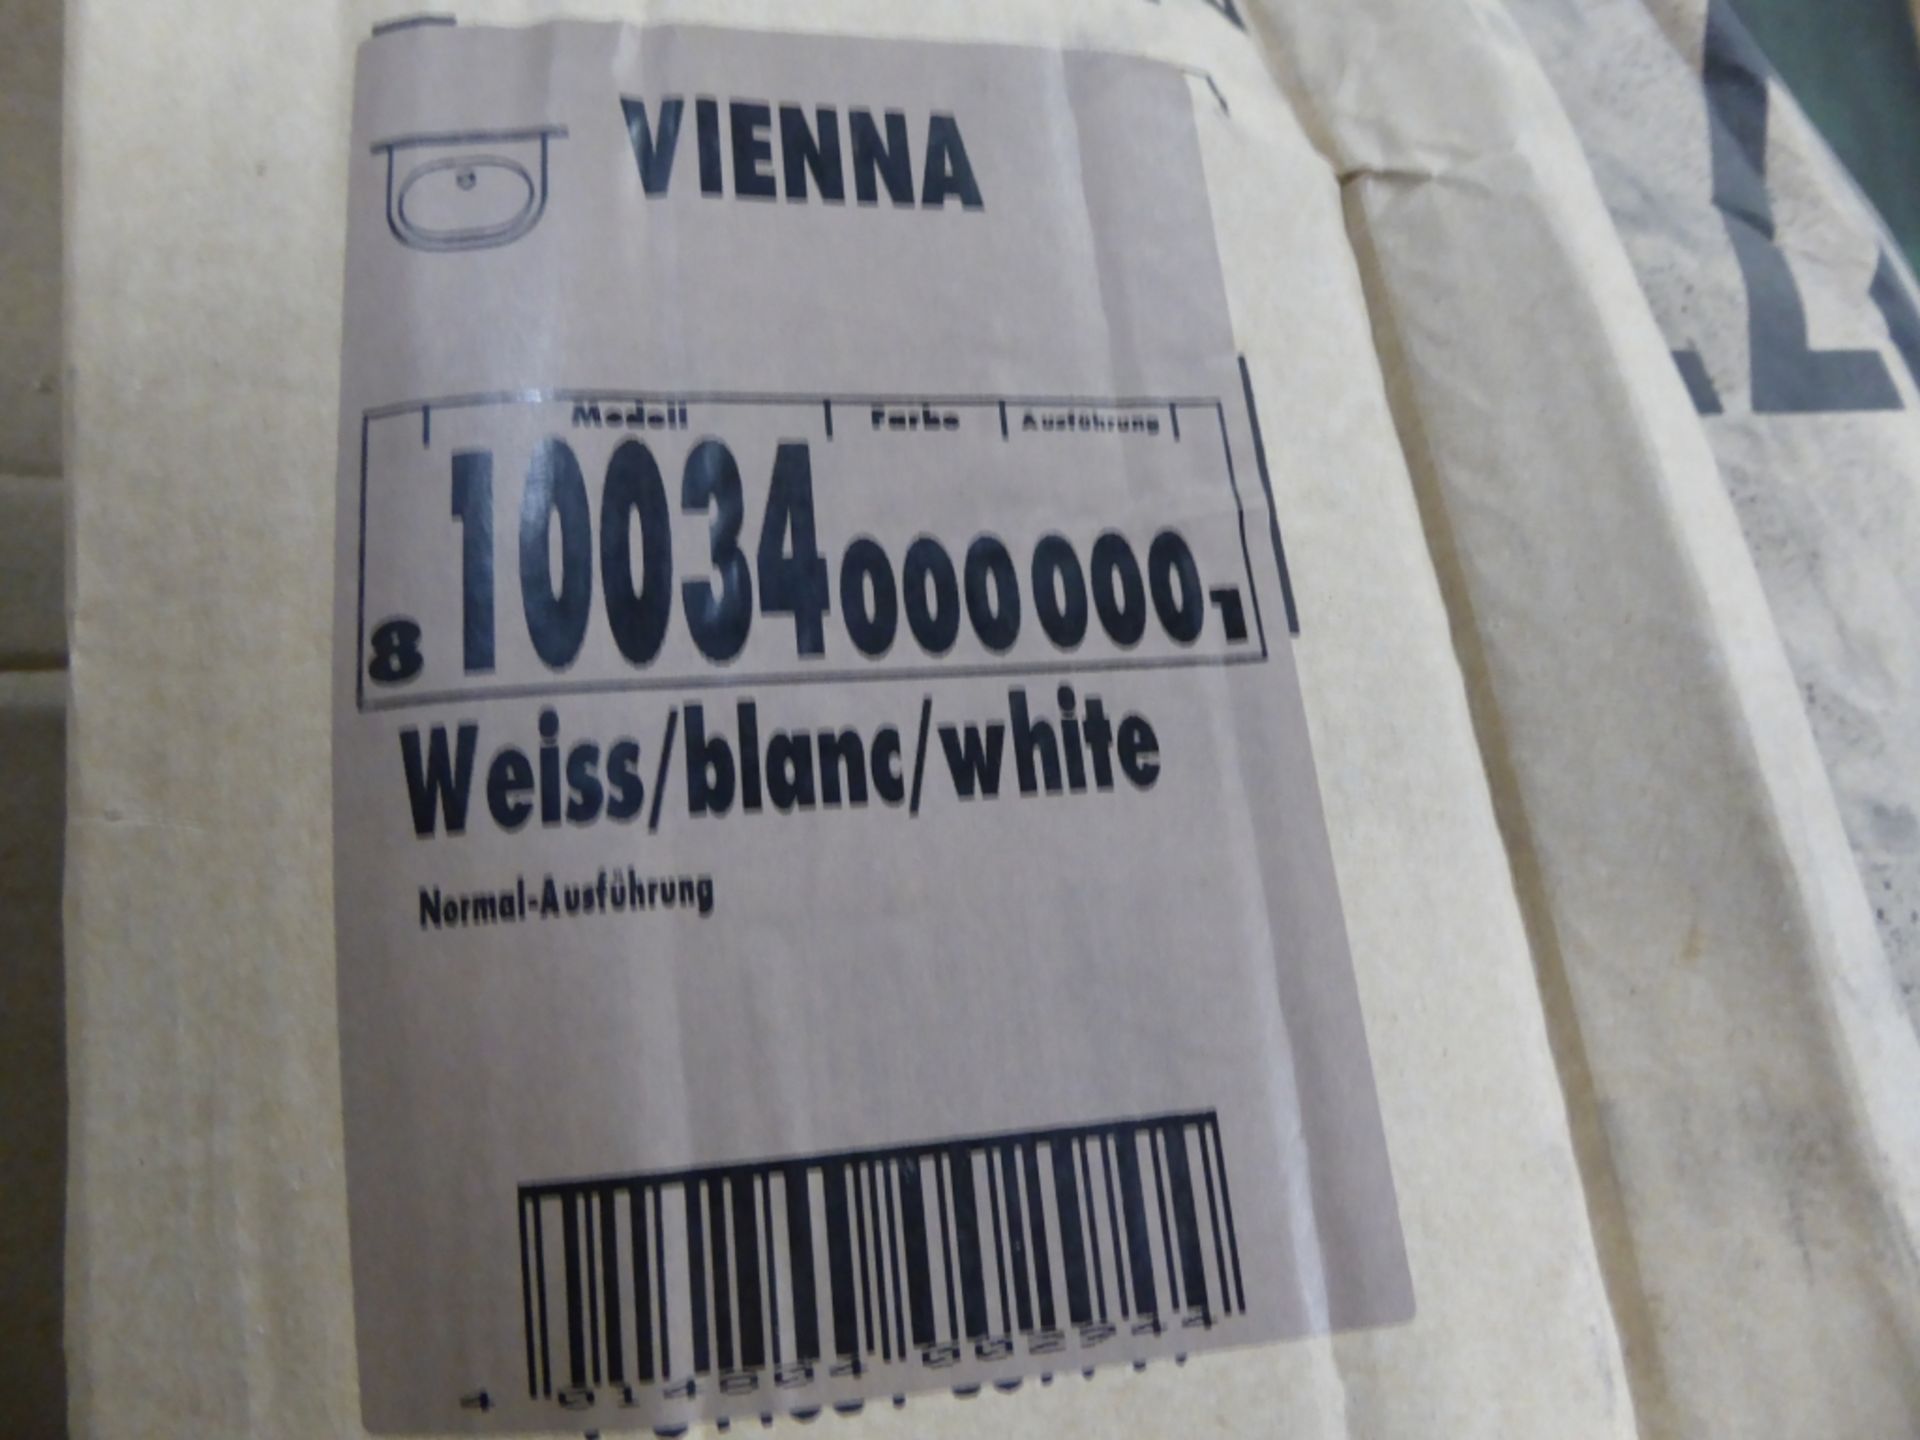 11 x Laufen Vienna Sink, White, Model 810034.000.000 - Image 3 of 3